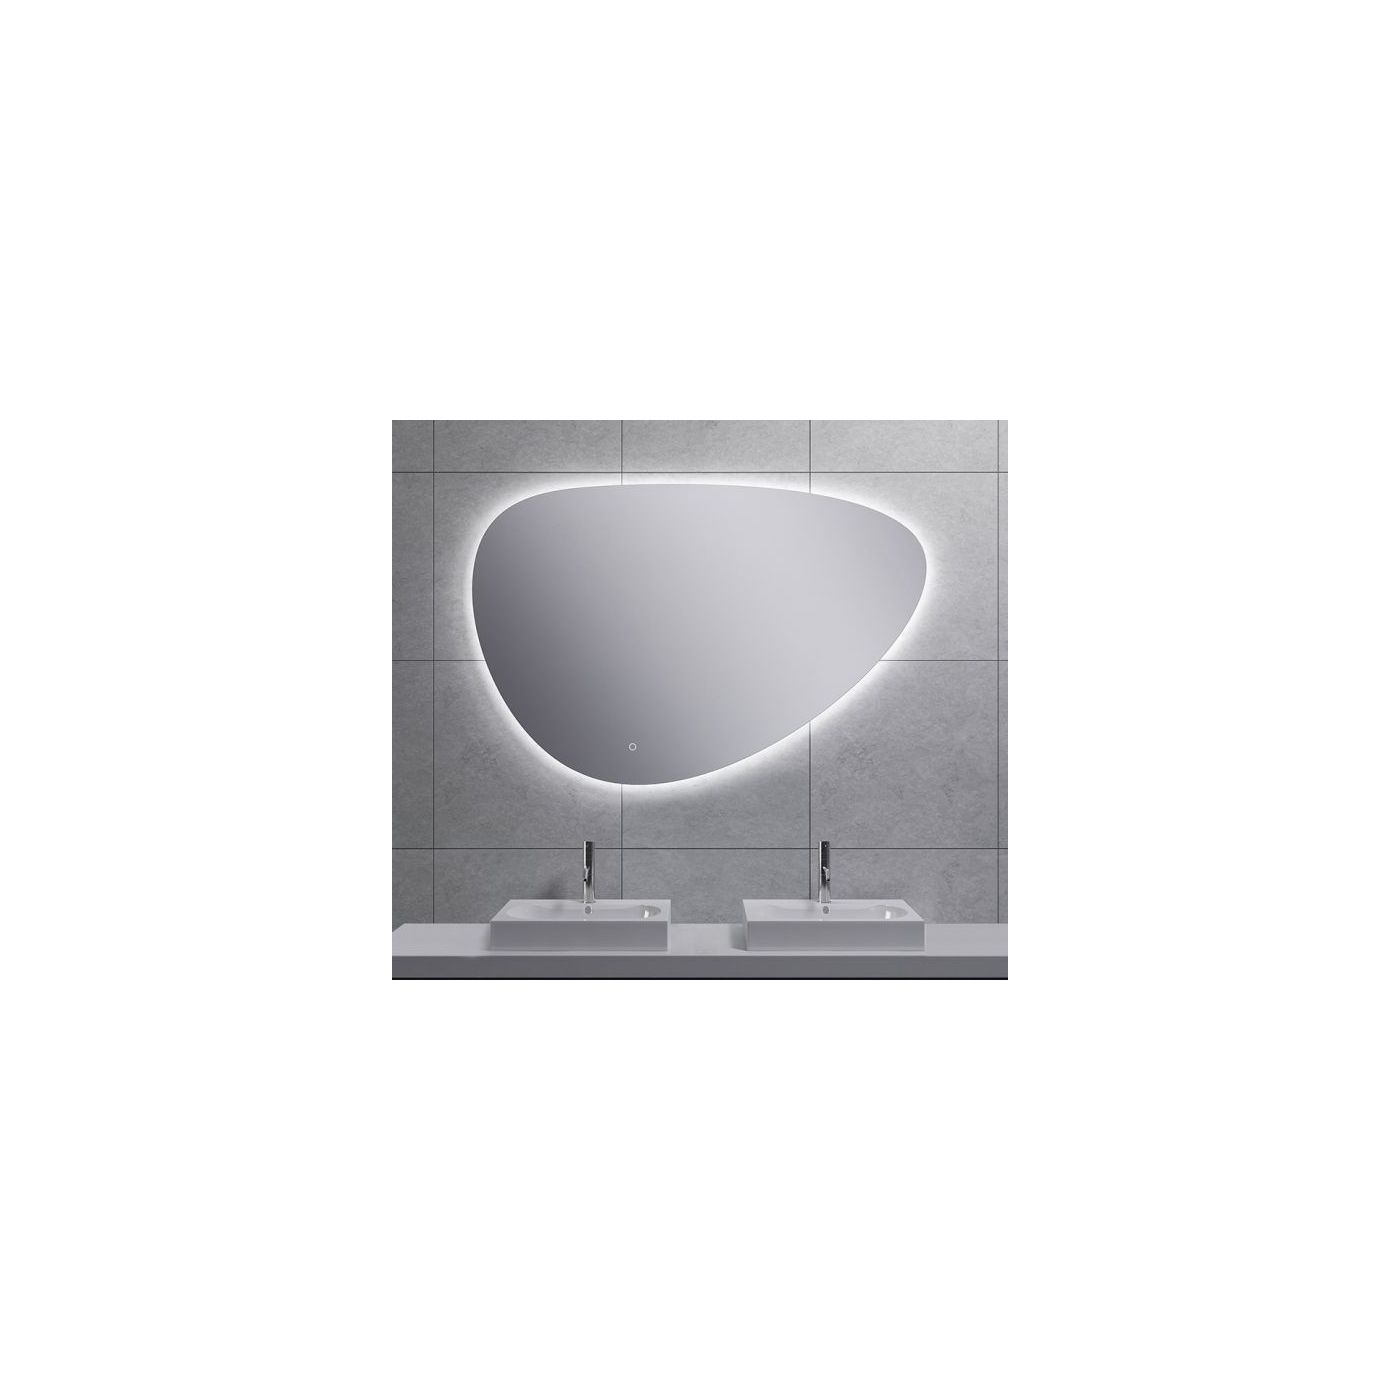 Wiesbaden Uovo spiegel eirond met LED verlichting 150x100 cm chroom